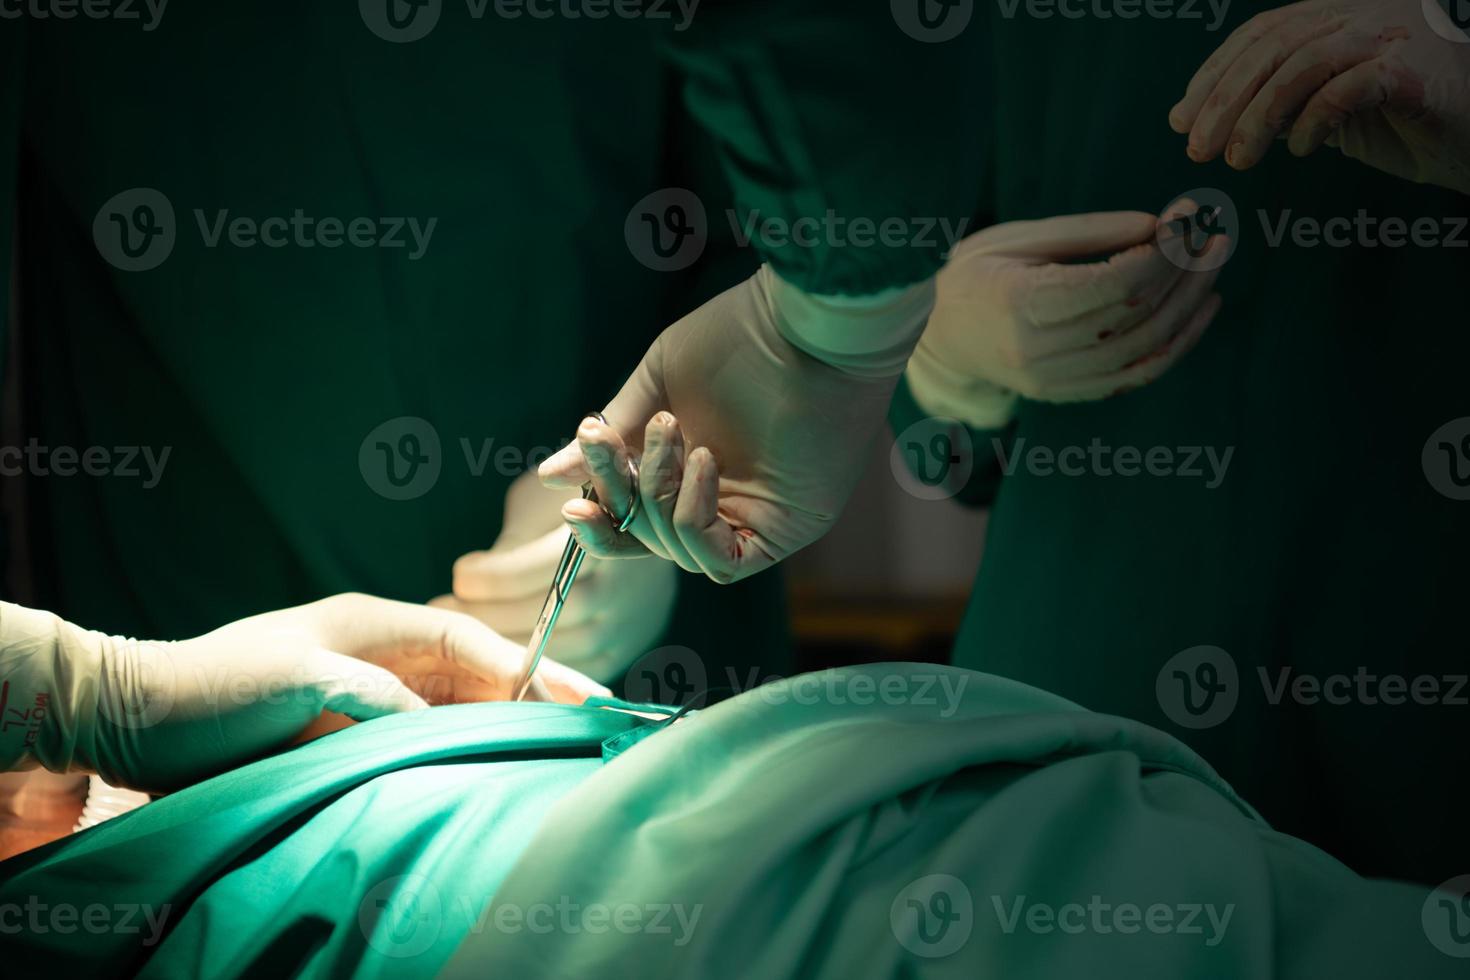 hoogleraar geneeskunde in cardiologie en een team van artsen in de operatiekamer die een harttransplantatie ondergaan foto